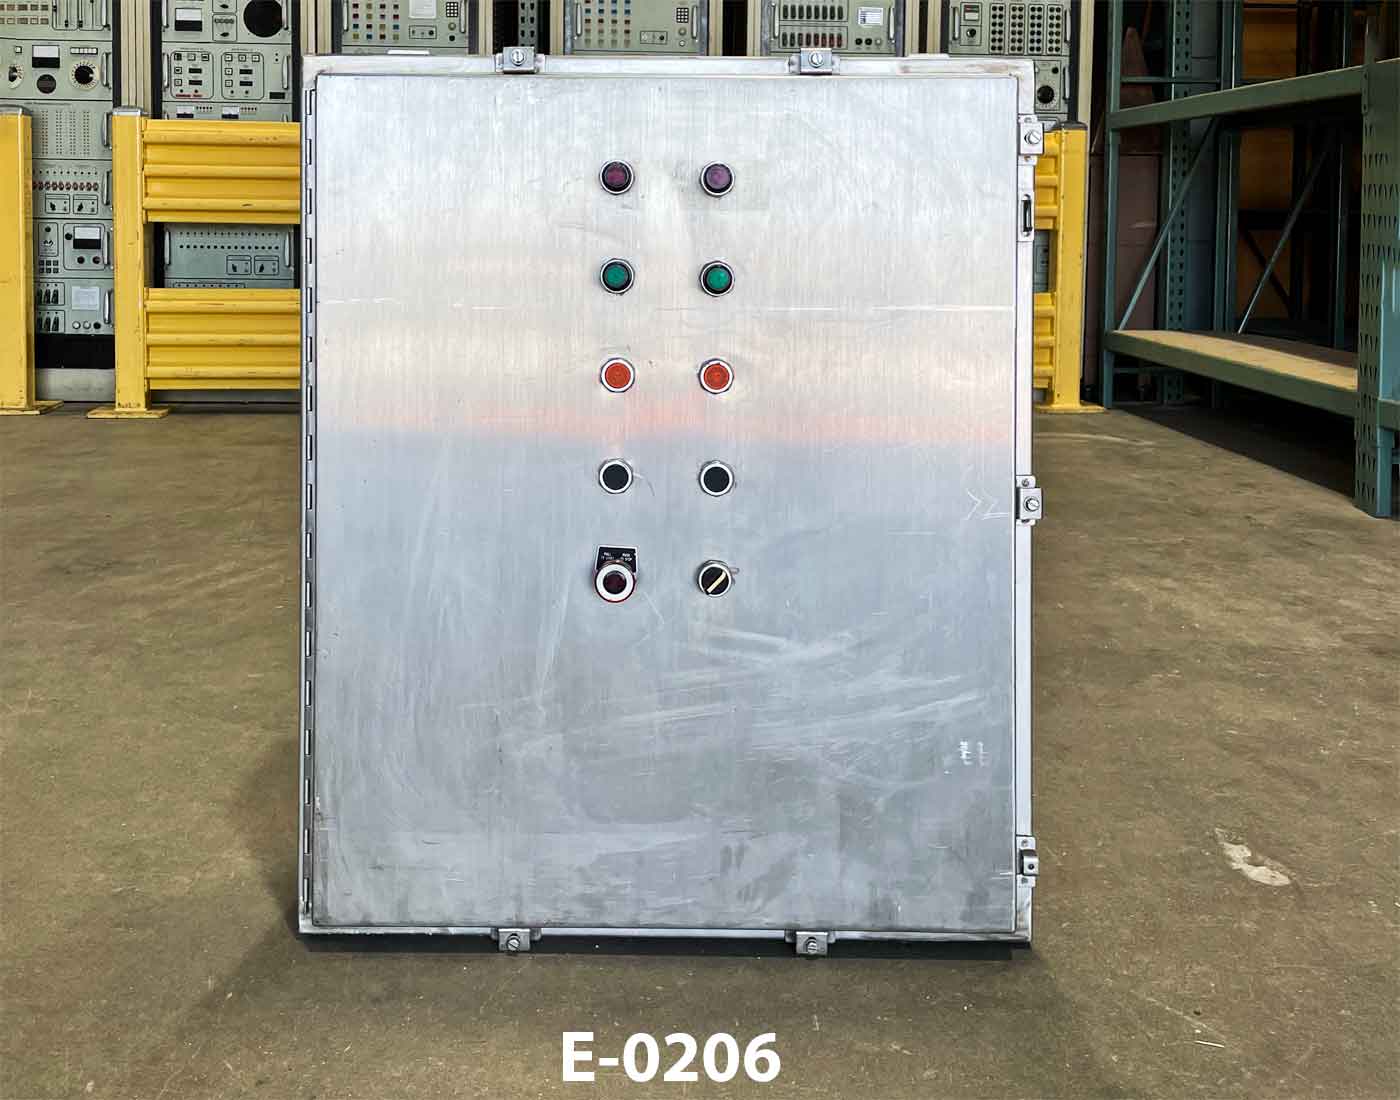 Electronic Control Panel E-0206